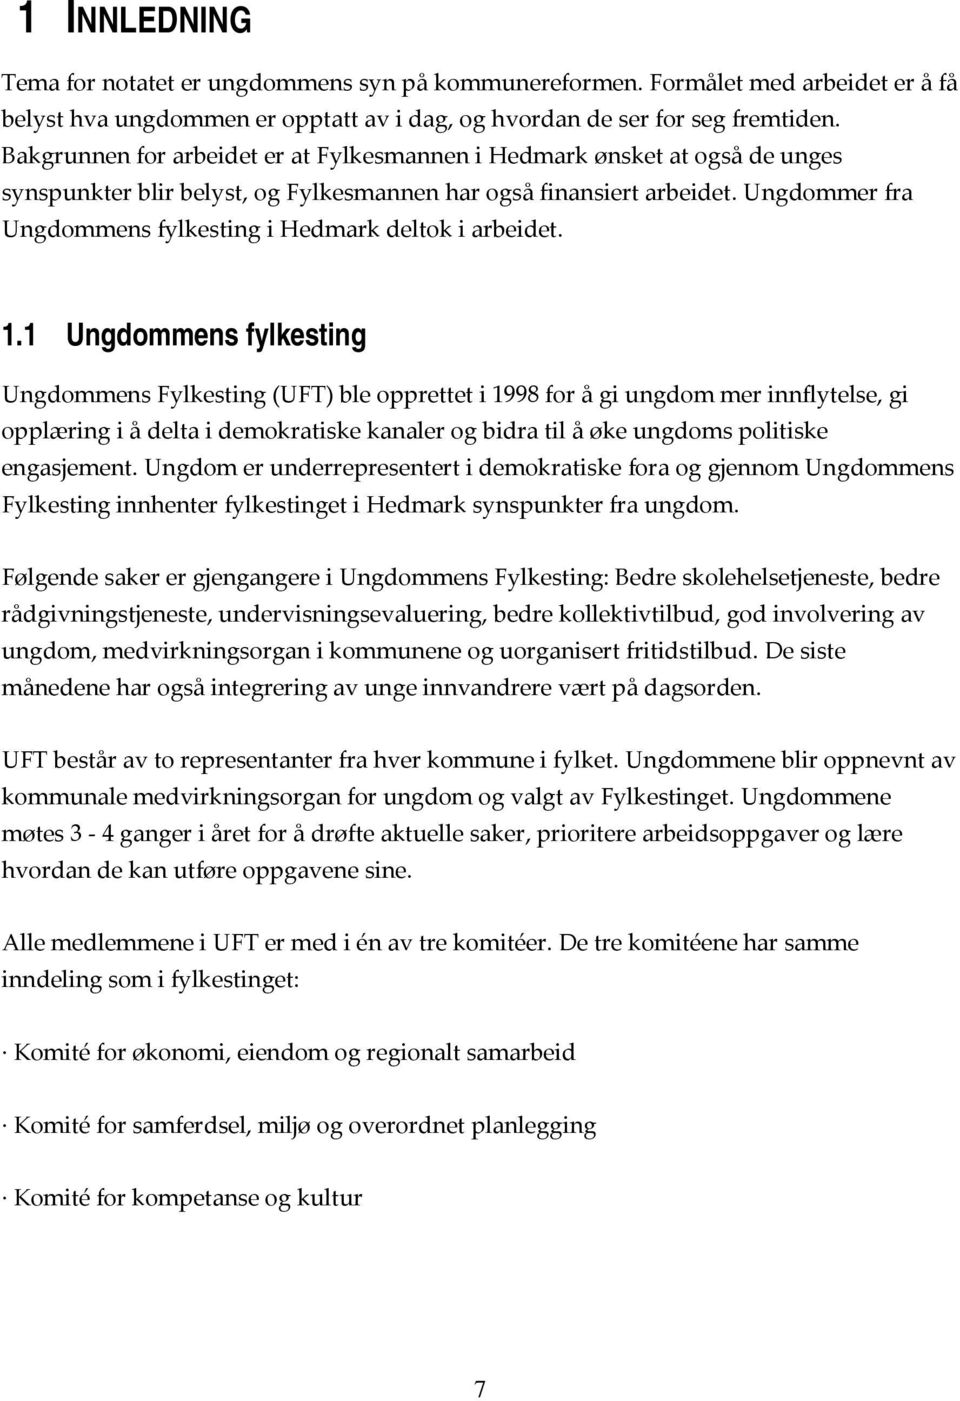 Ungdommer fra Ungdommens fylkesting i Hedmark deltok i arbeidet. 1.